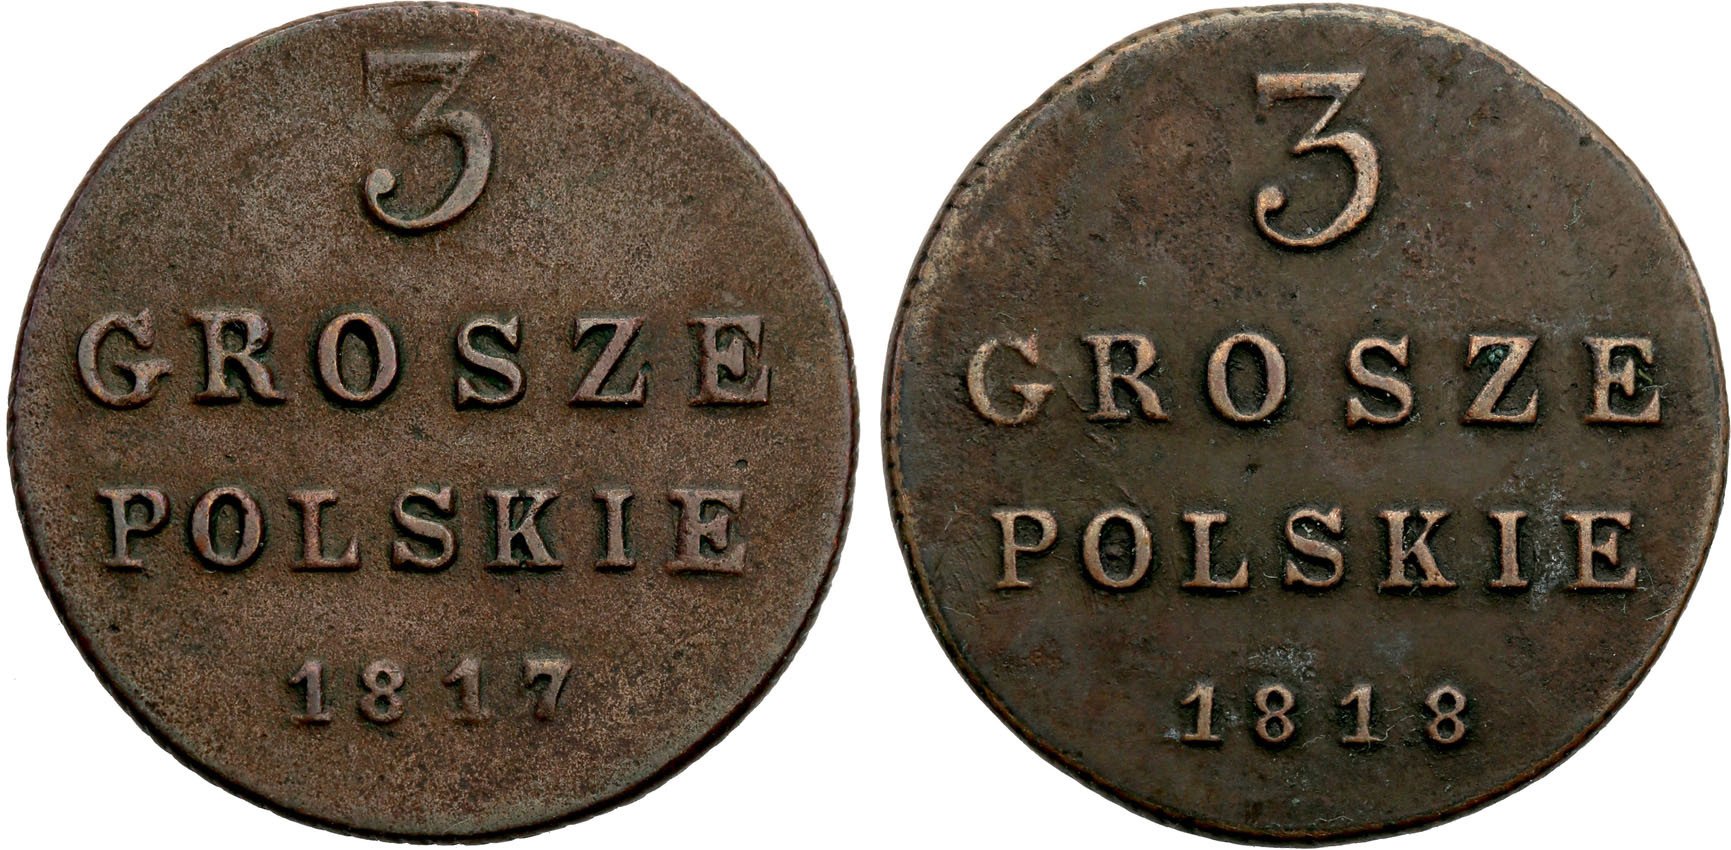 Polska XlX w. / Rosja. 3 Grosze Polskie (Trojak) 1817-1818, Warszawa – zestaw 2 szt.